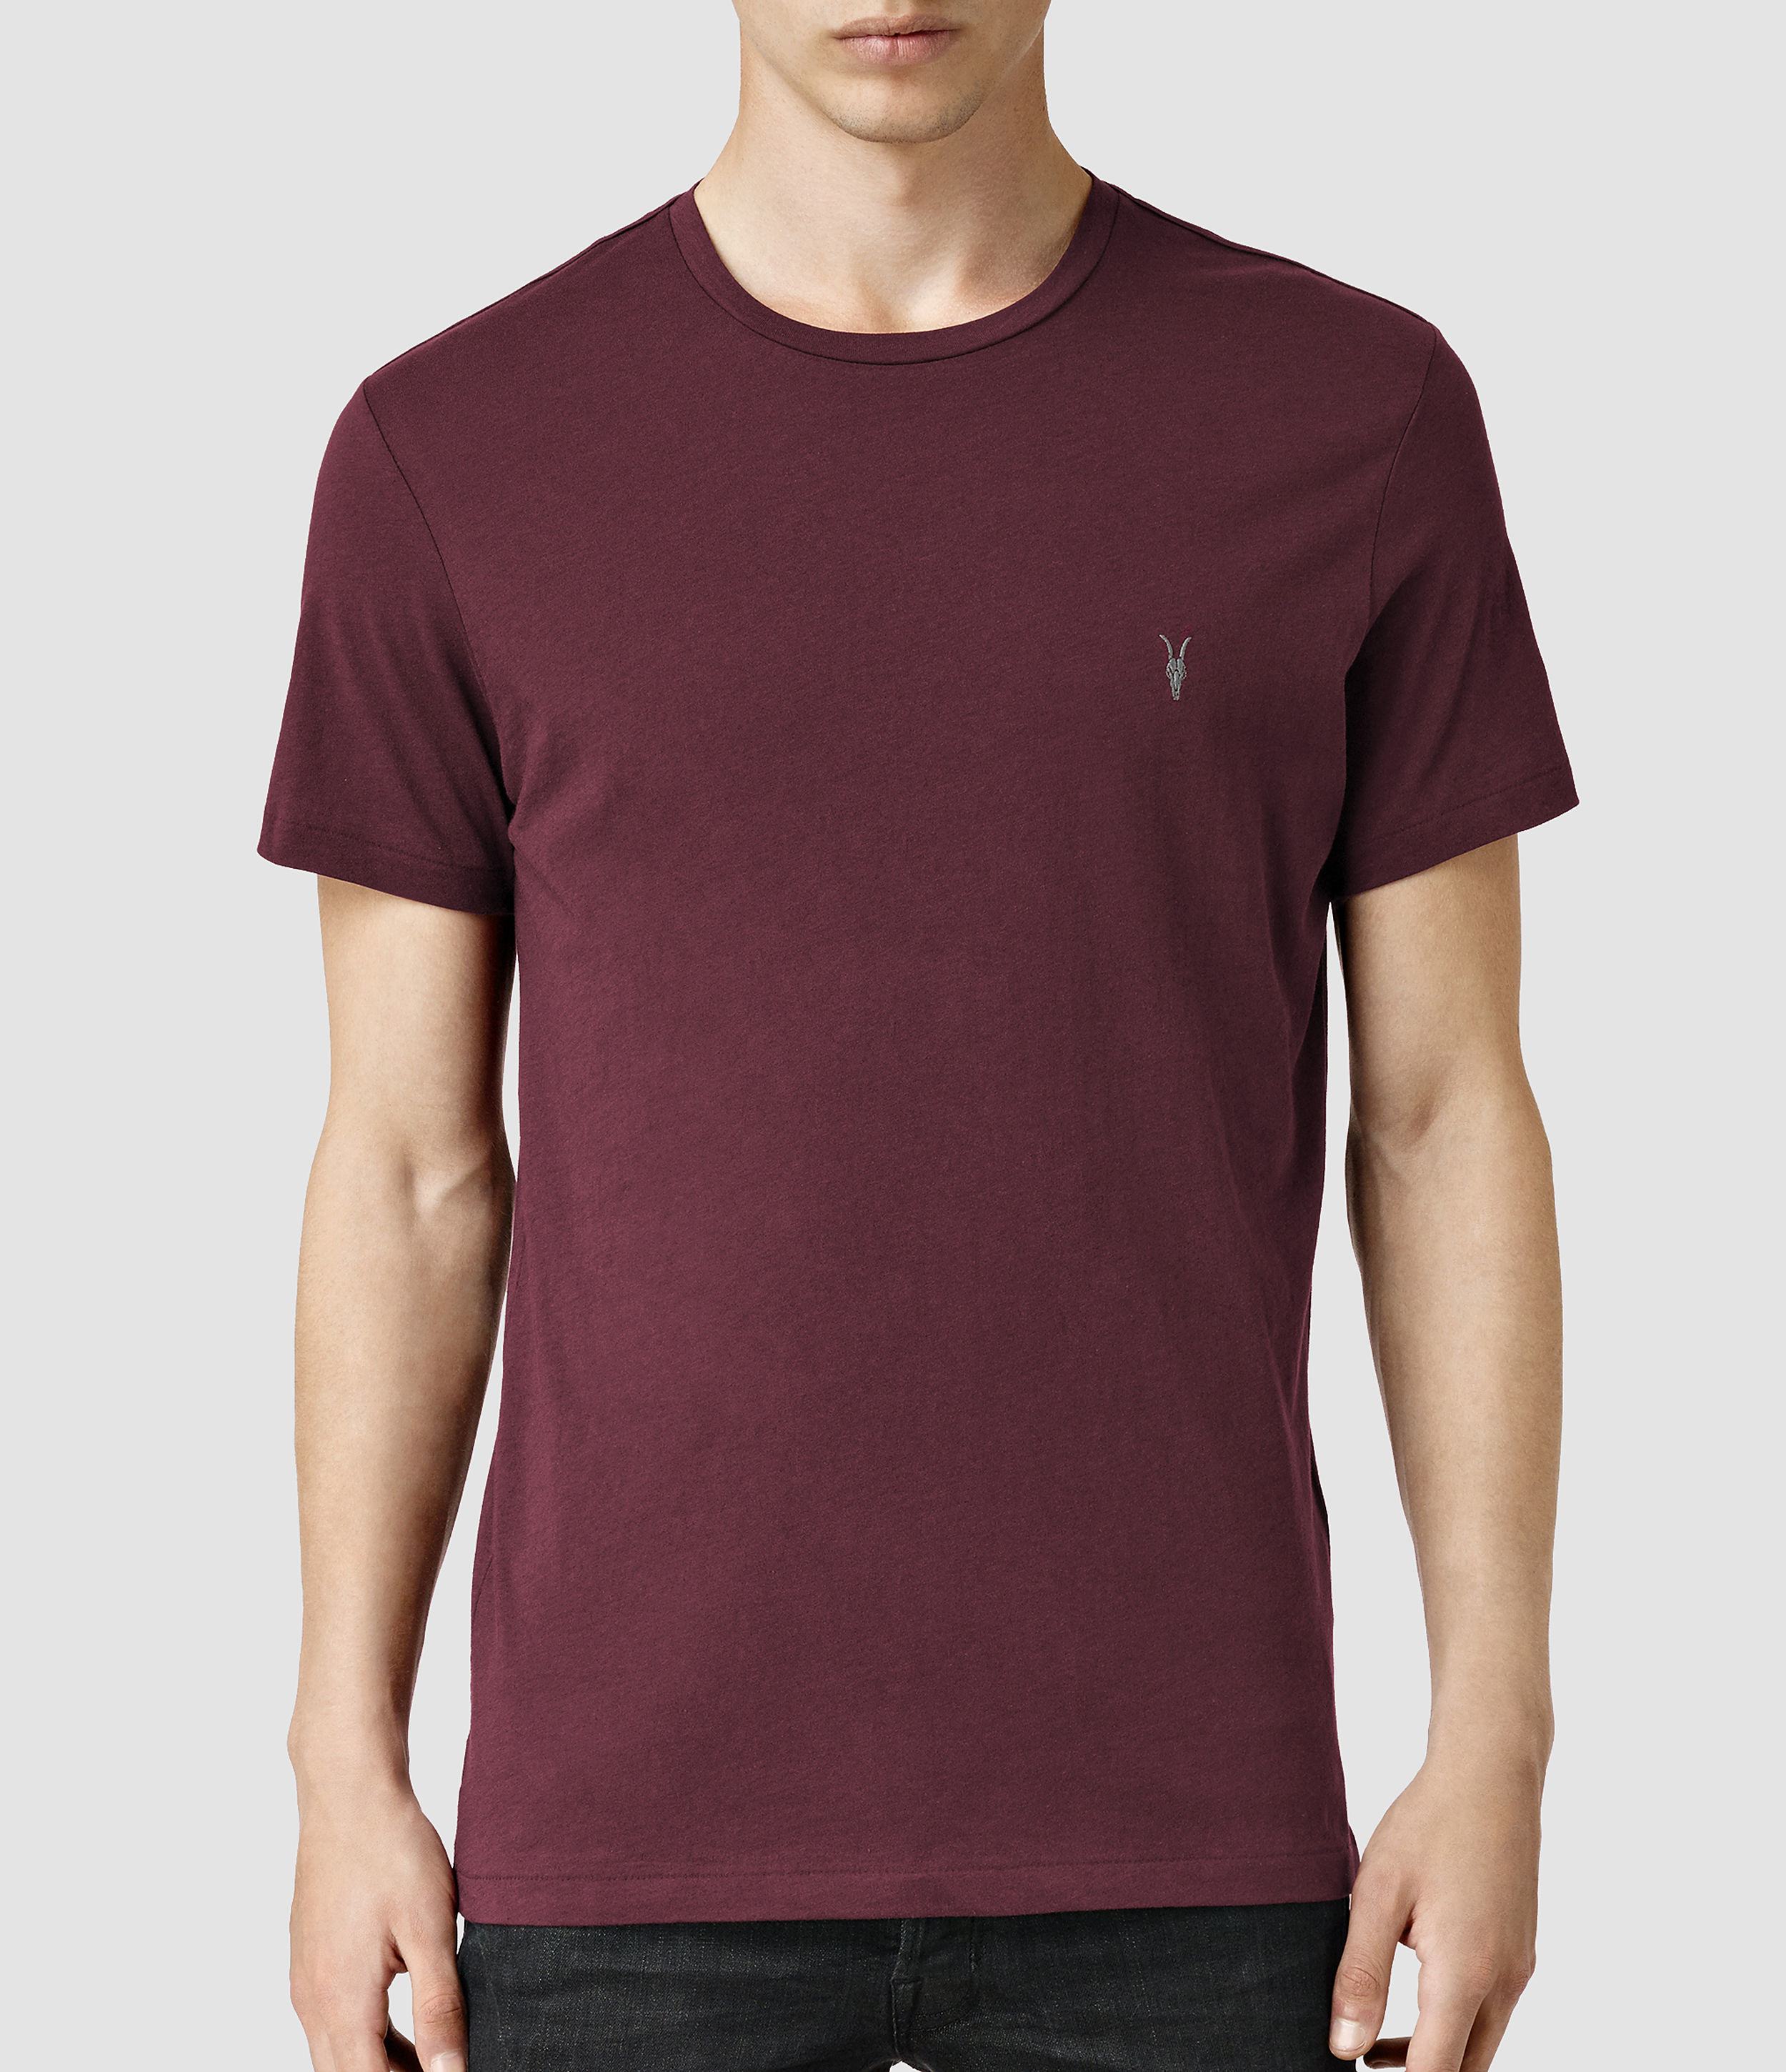 AllSaints Cotton Tonic Crew T-shirt 3 Pack for Men - Lyst